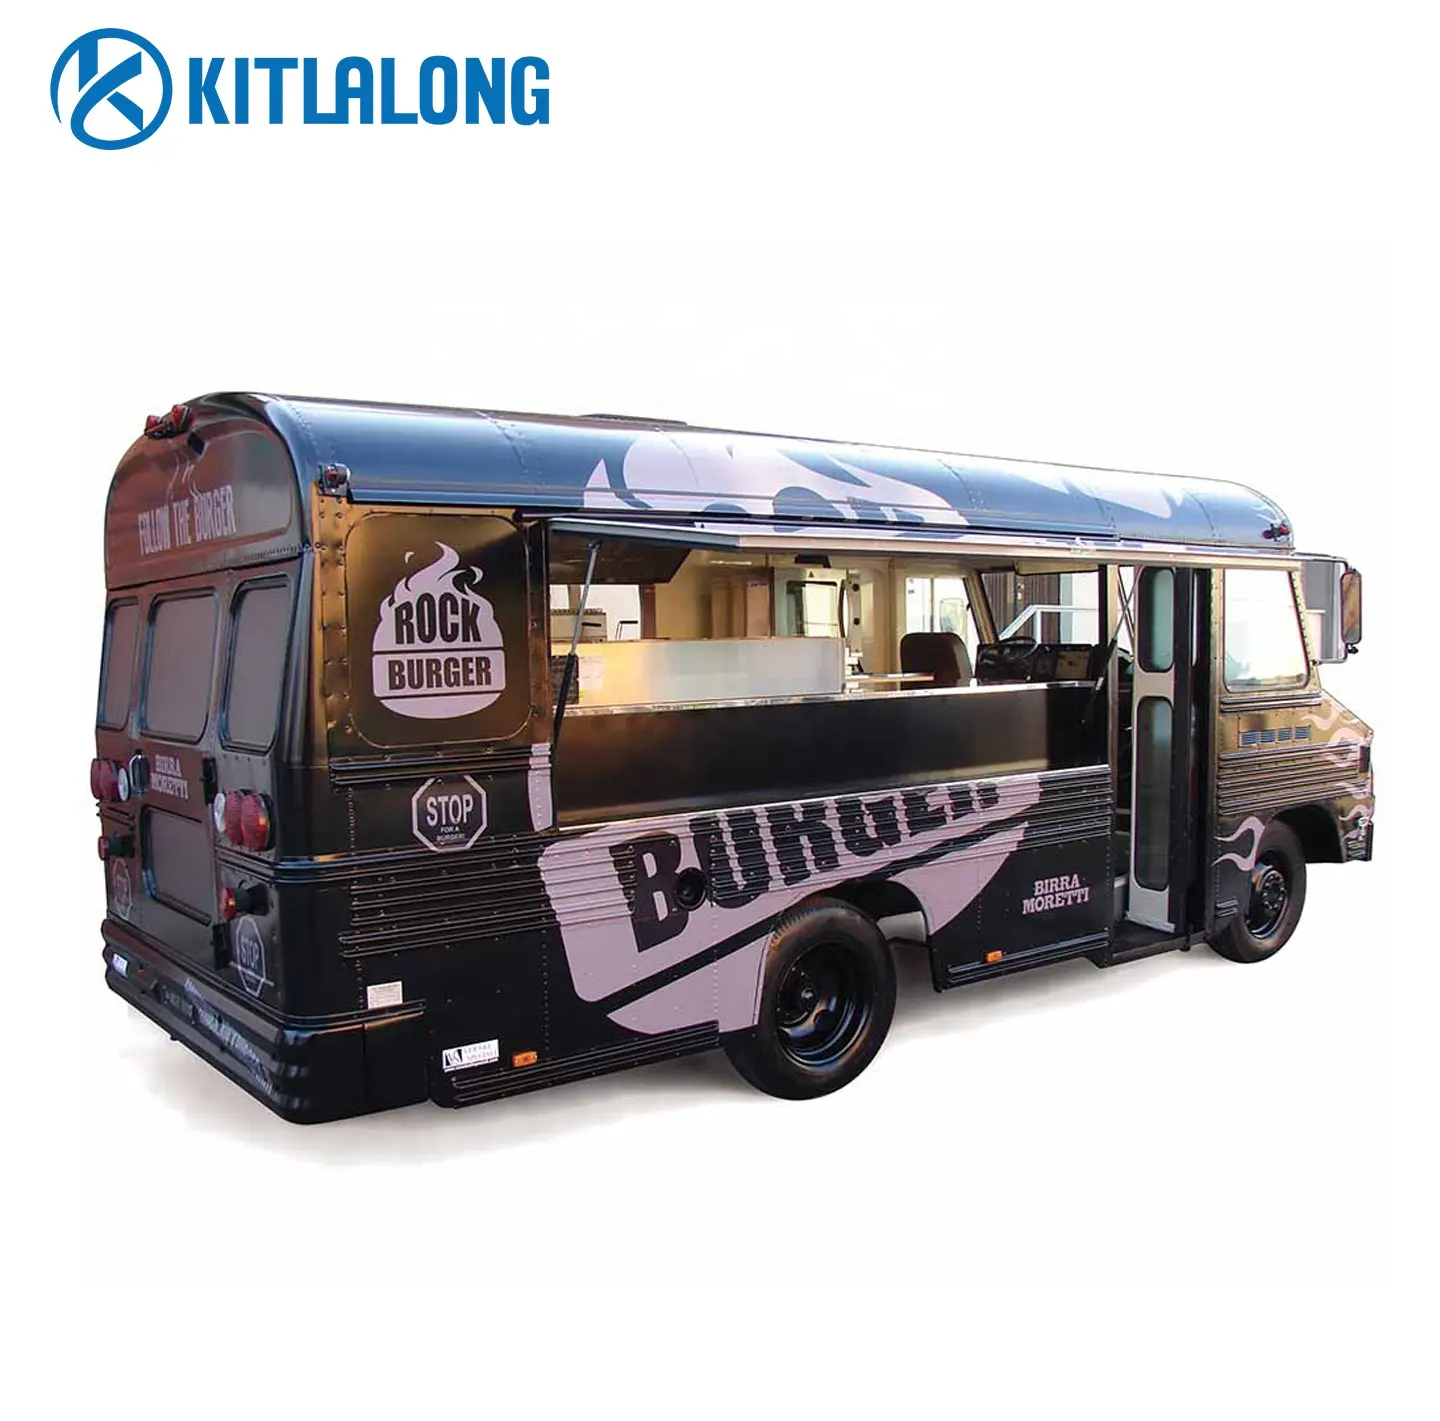 Kitlalong-hamburguesa, pizza, tienda de aperitivos, kebab, cocina móvil, camiones de café, camión de comida con camión